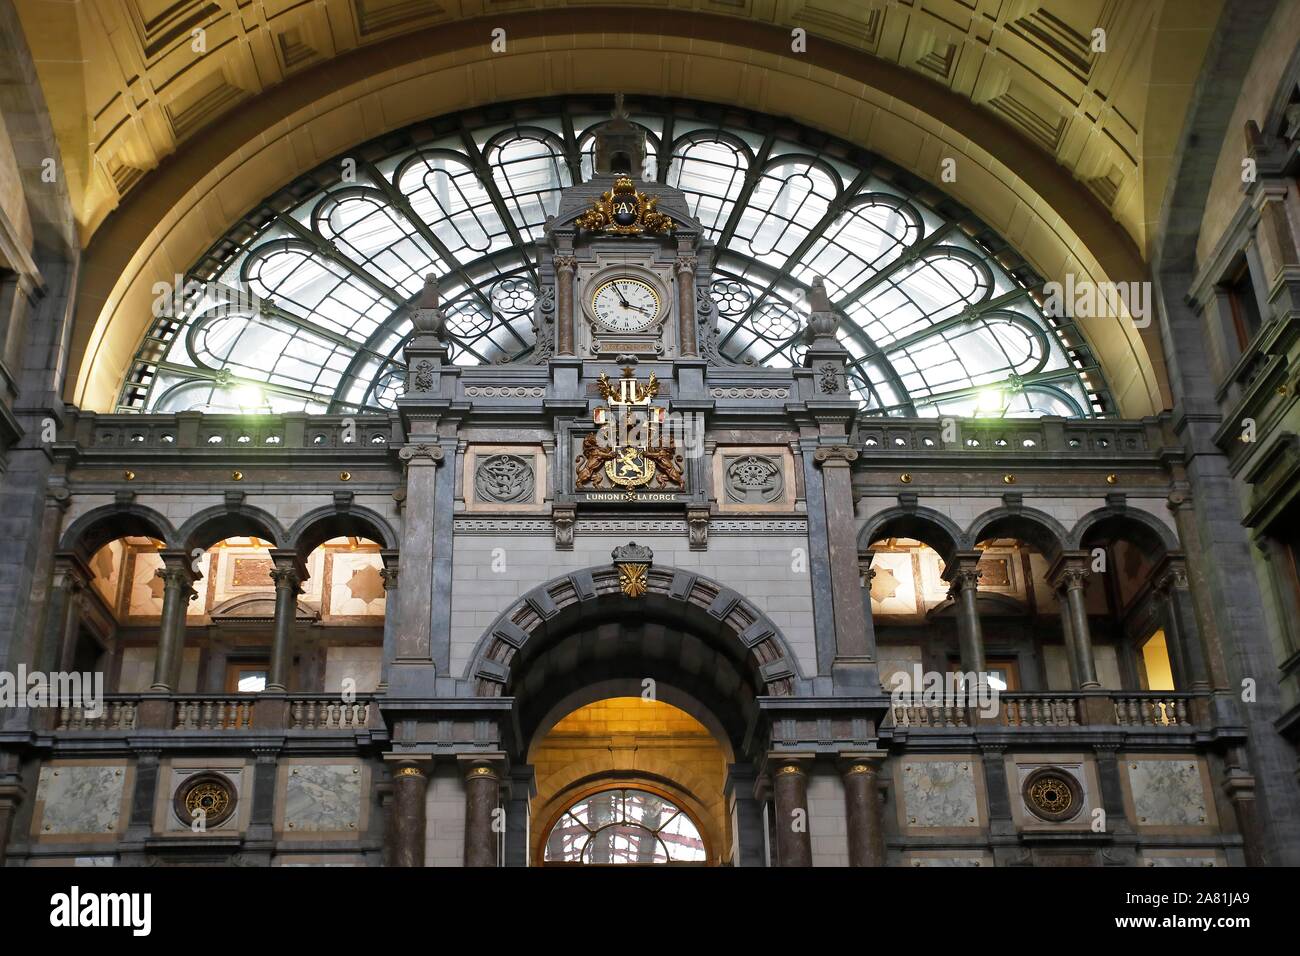 Antwerp-Centraal Historic Railway Station, Antwerp, Belgium Stock Photo